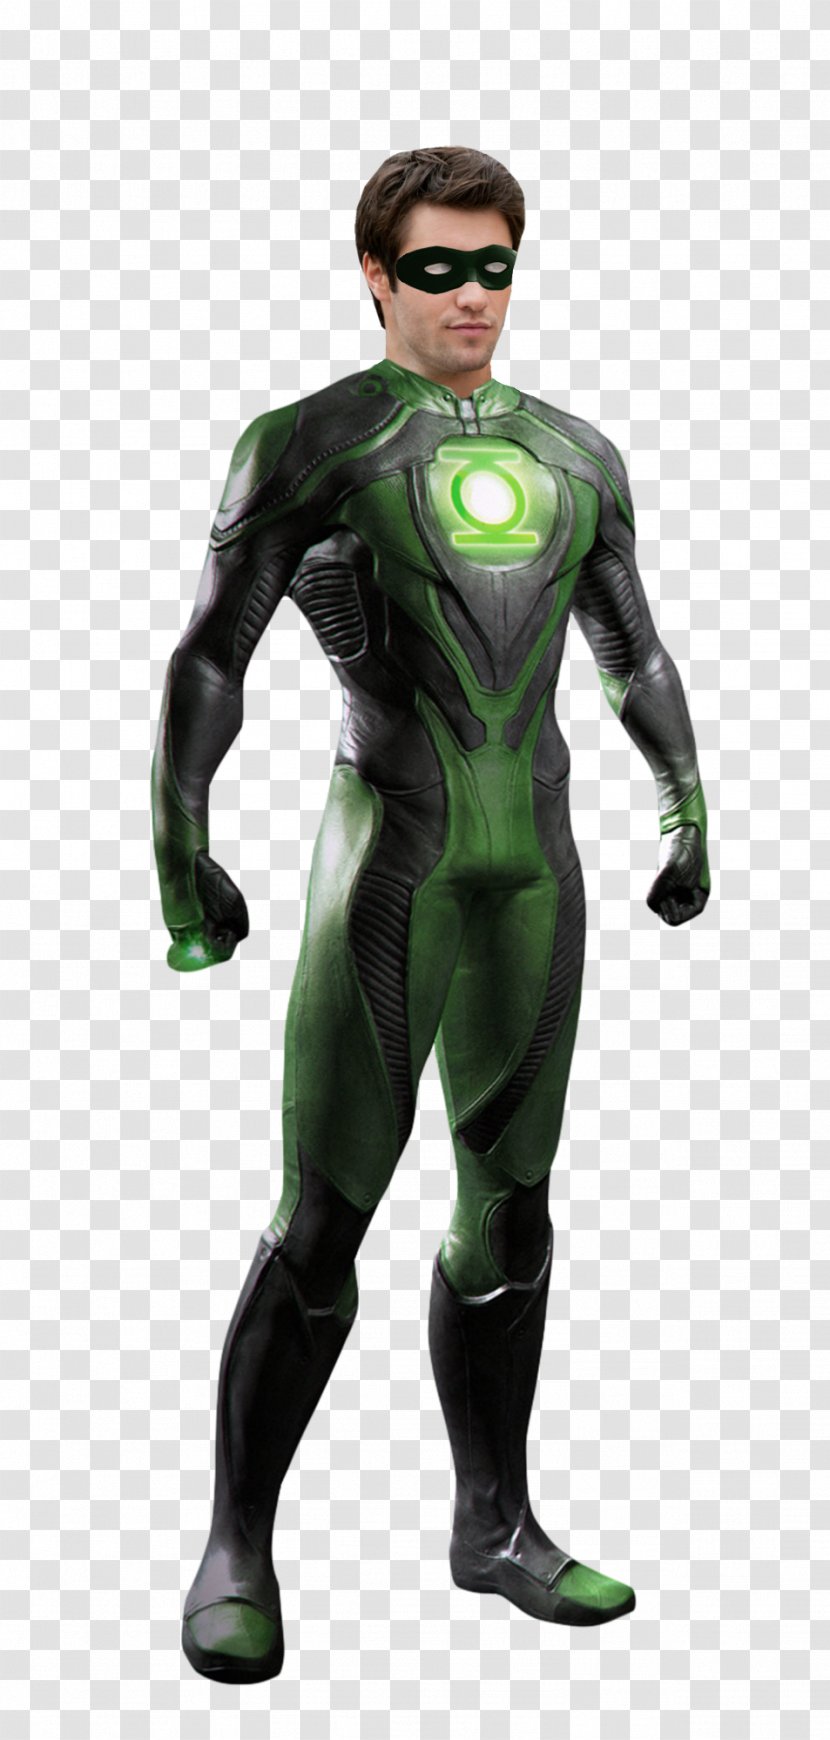 John Stewart Green Lantern Corps Hal Jordan Michael B. - Wetsuit - Bow Man Transparent PNG